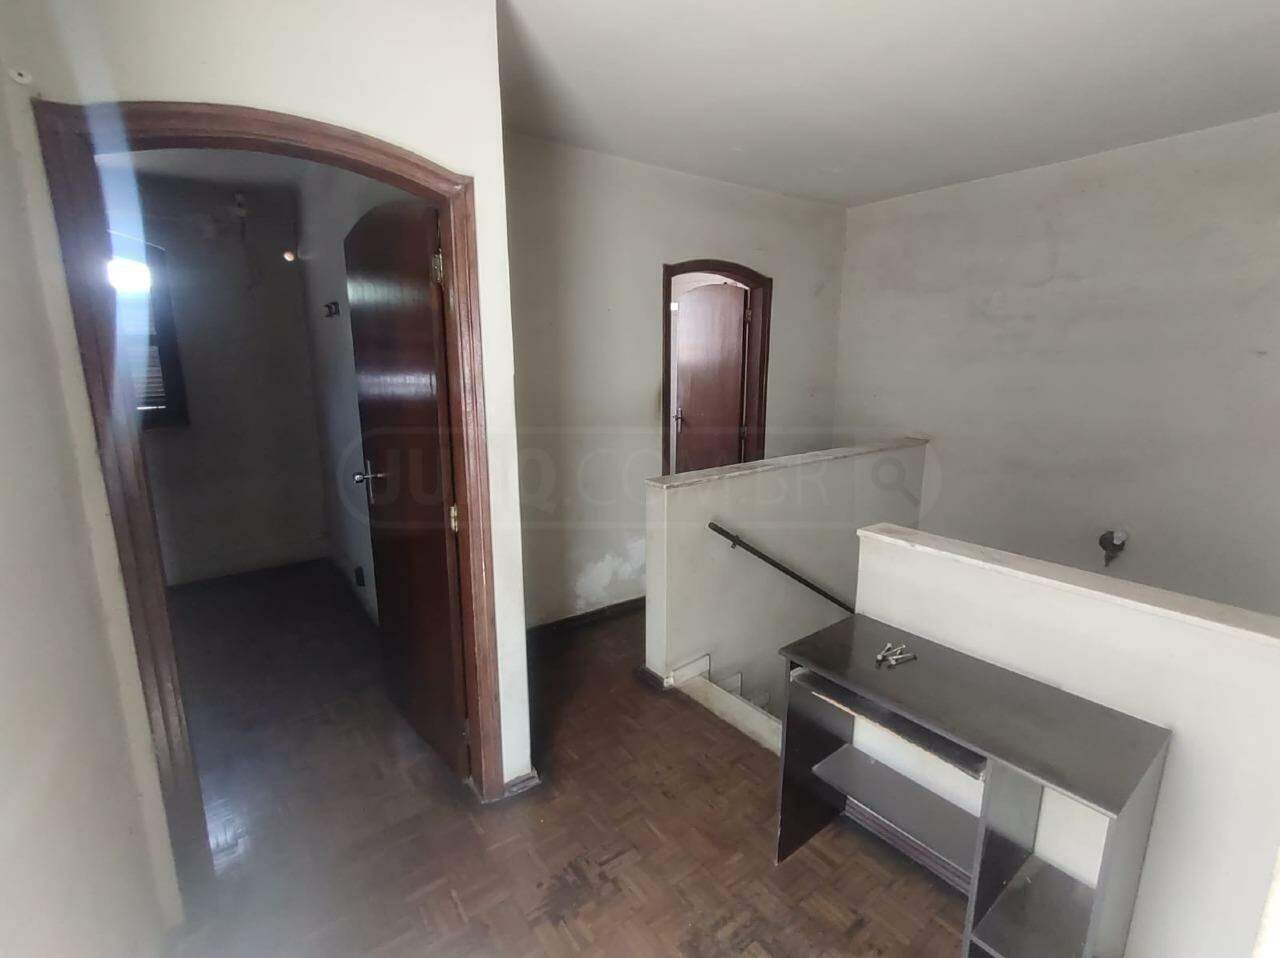 Casa à venda, 3 quartos, 2 vagas, no bairro São Dimas em Piracicaba - SP